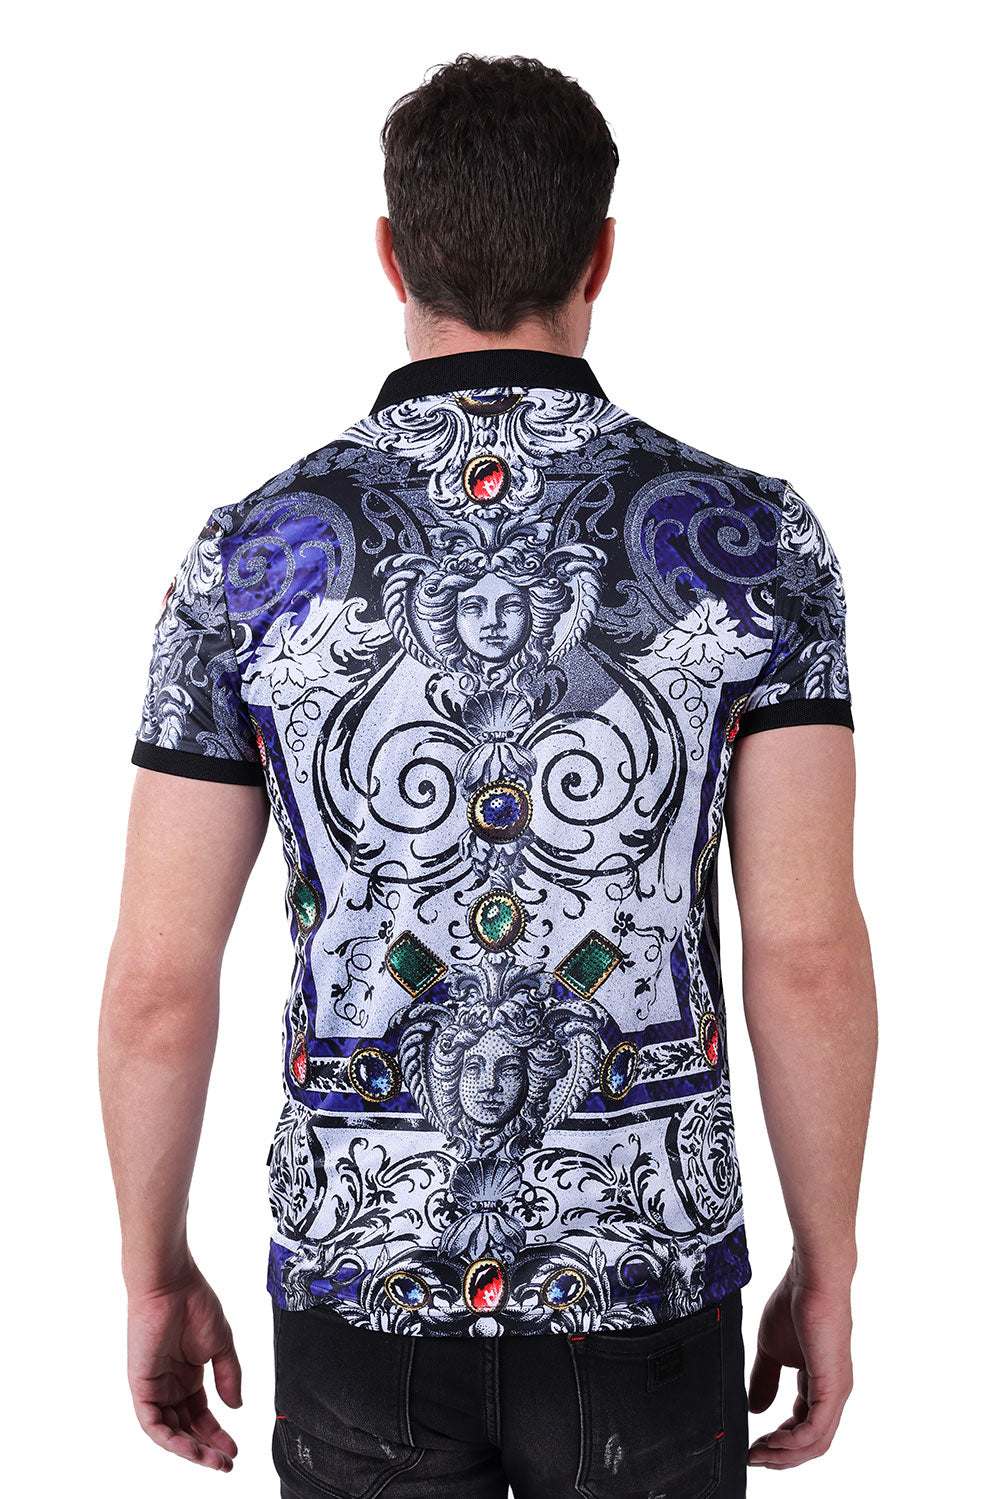 Barabas Men's Medusa Rhinestone Gem Printed Baroque Polo Shirt PSP2024 Black Royal